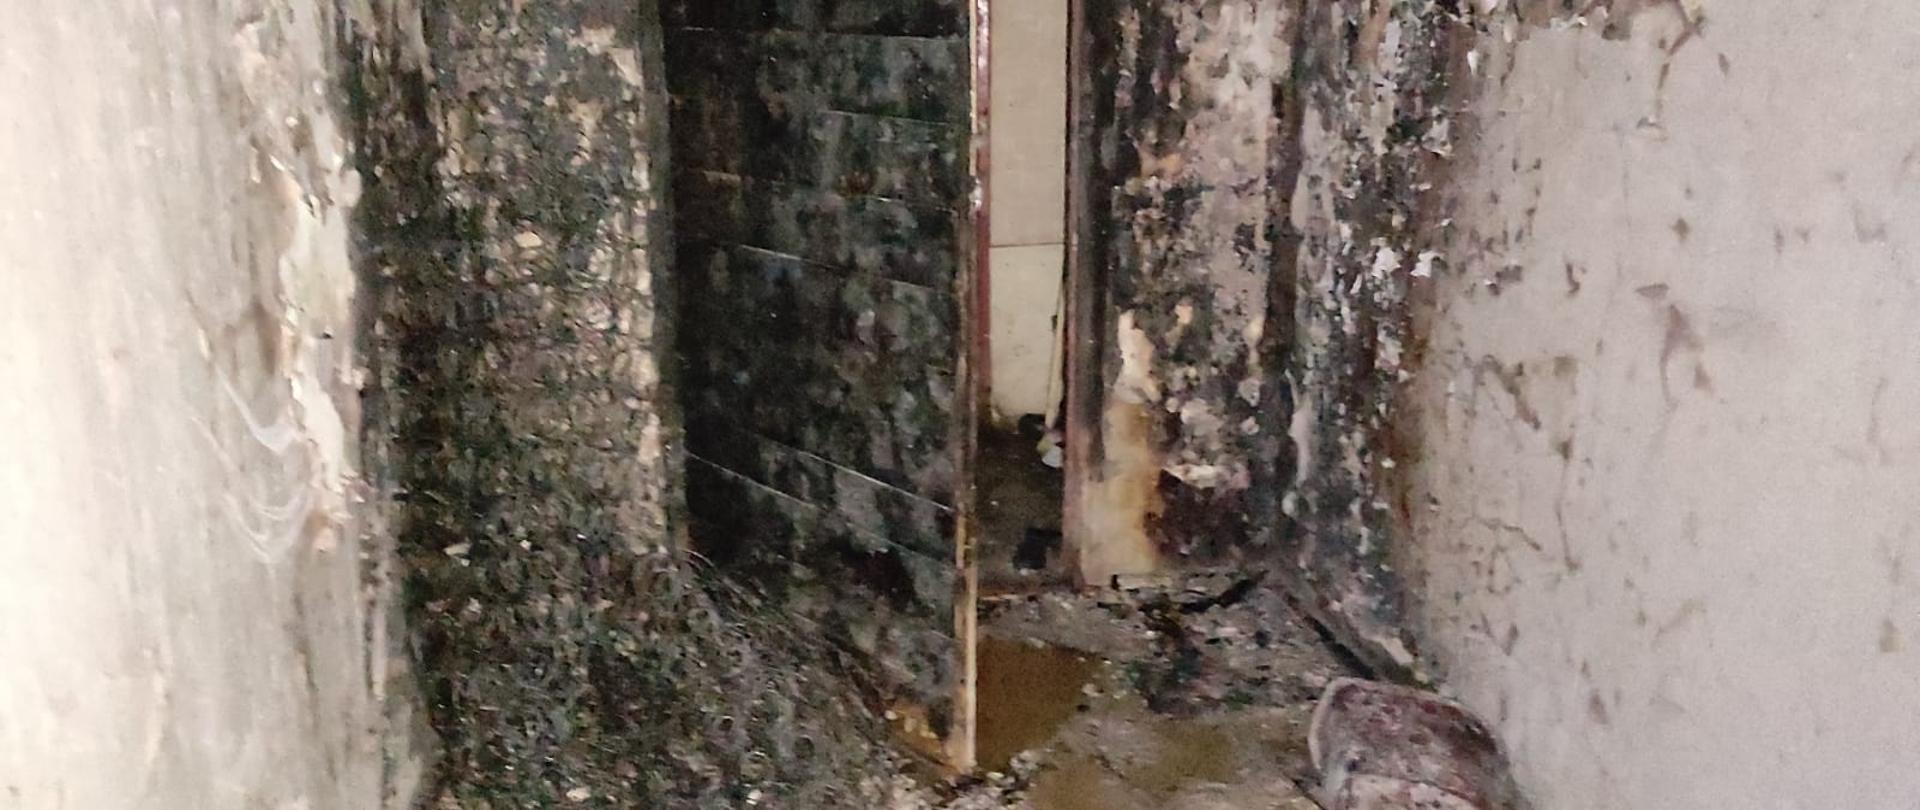 Spalony korytarz i drzwi wejściowe do mieszkania.